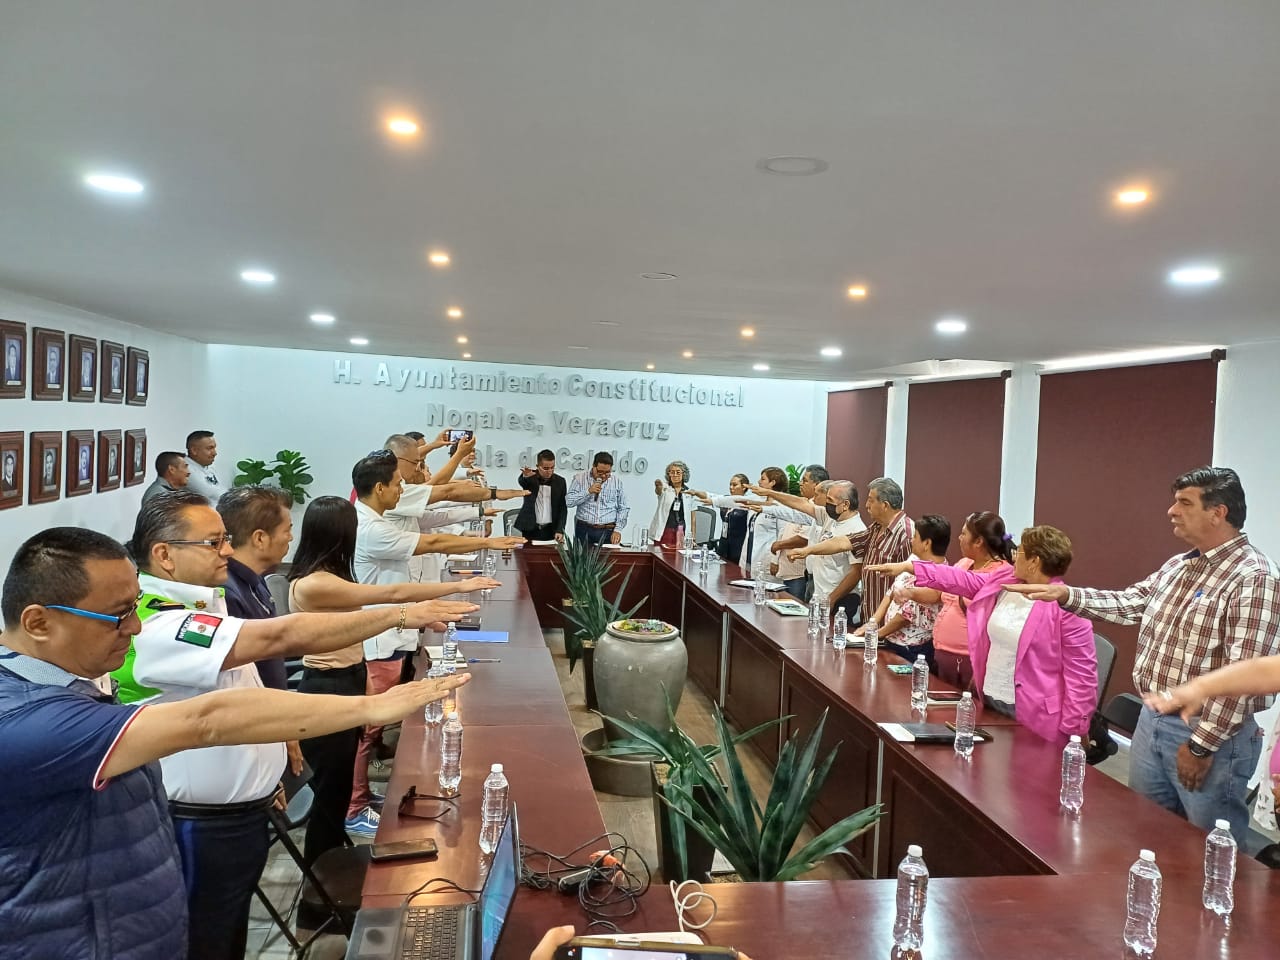 Integran el comité municipal de Salud en Nogales, Veracruz